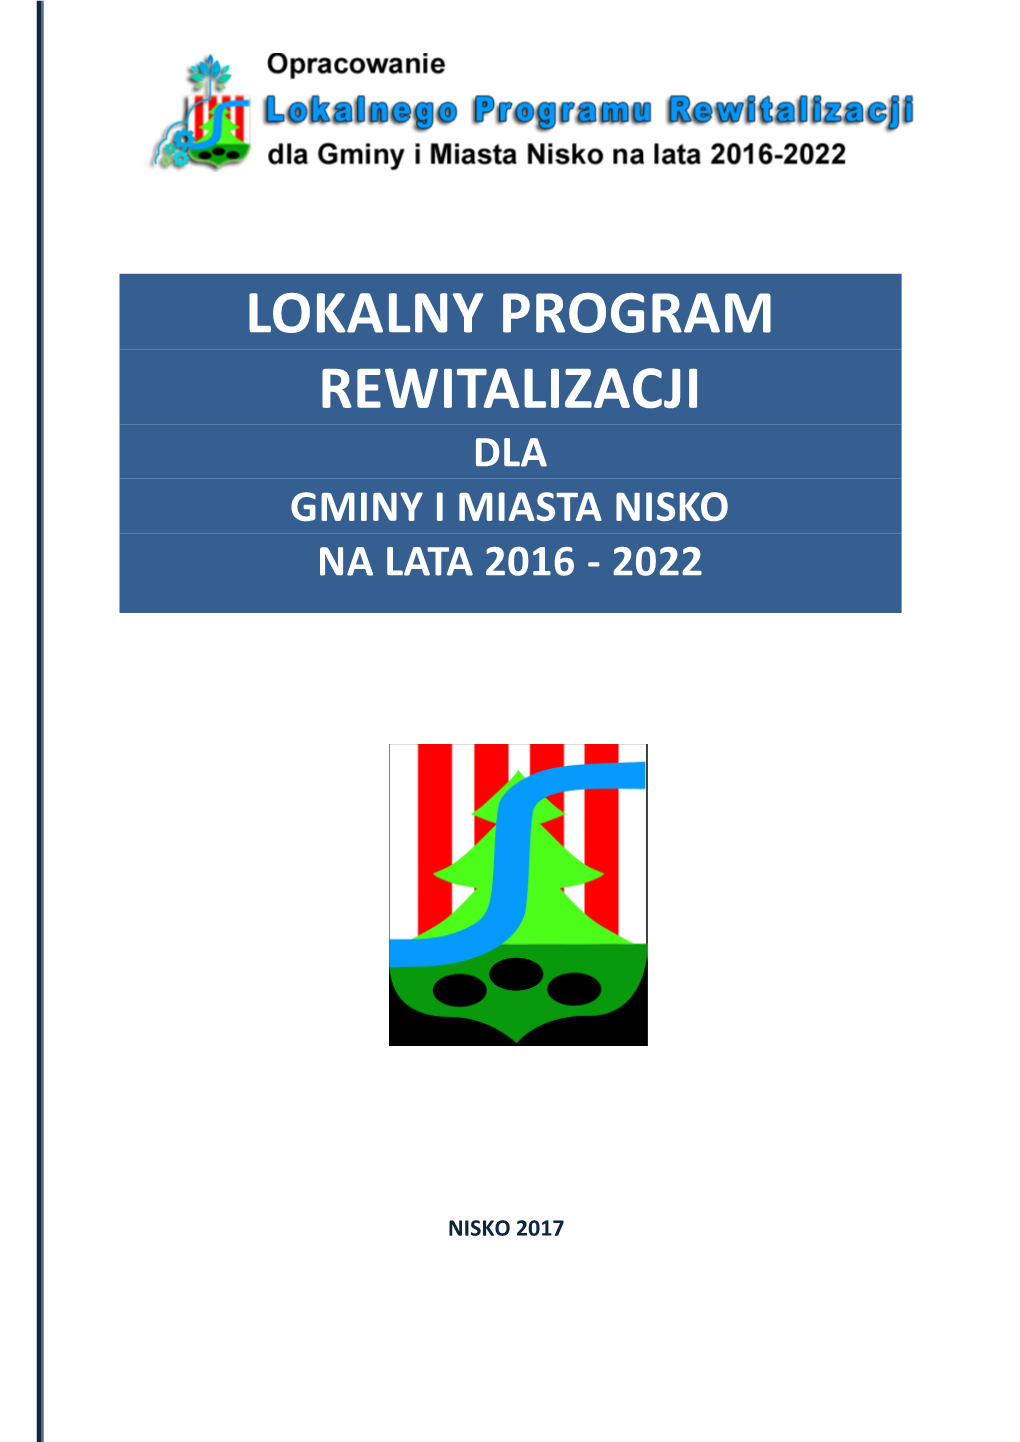 Lokalny Program Rewitalizacji Dla Gminy I Miasta Nisko Na Lata 2016 - 2022